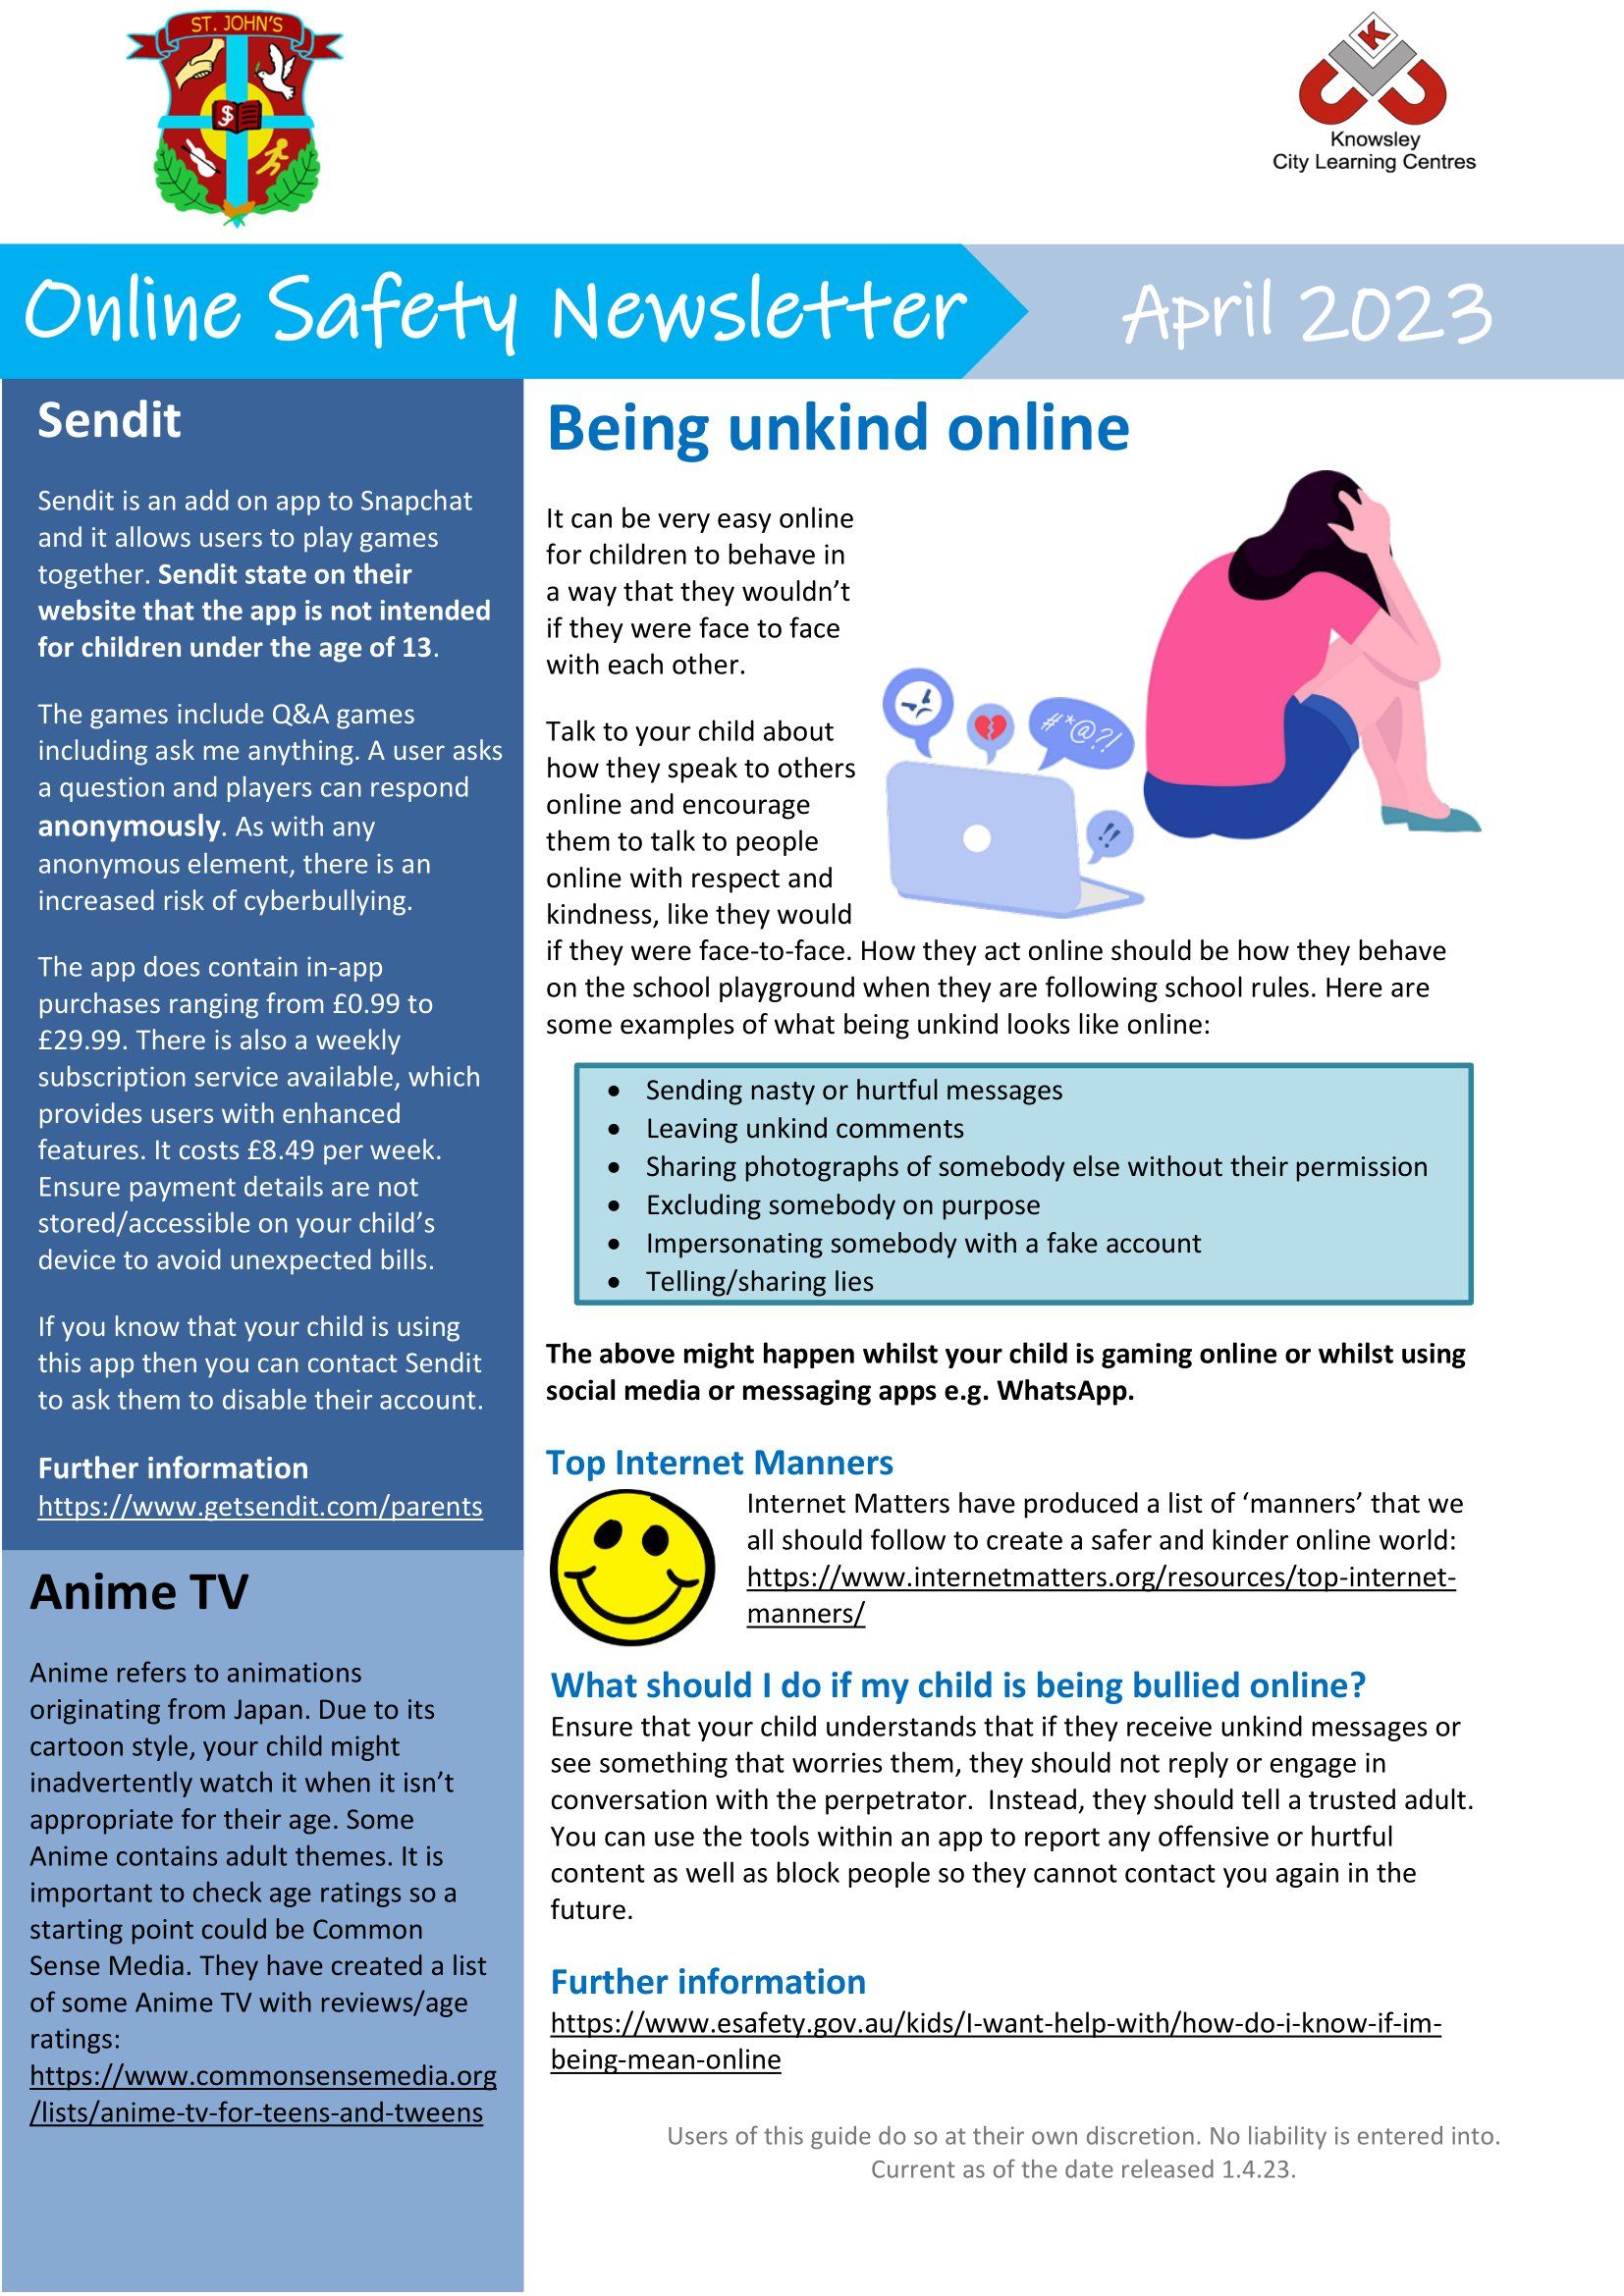 Online Safety Newsletter - April 2023